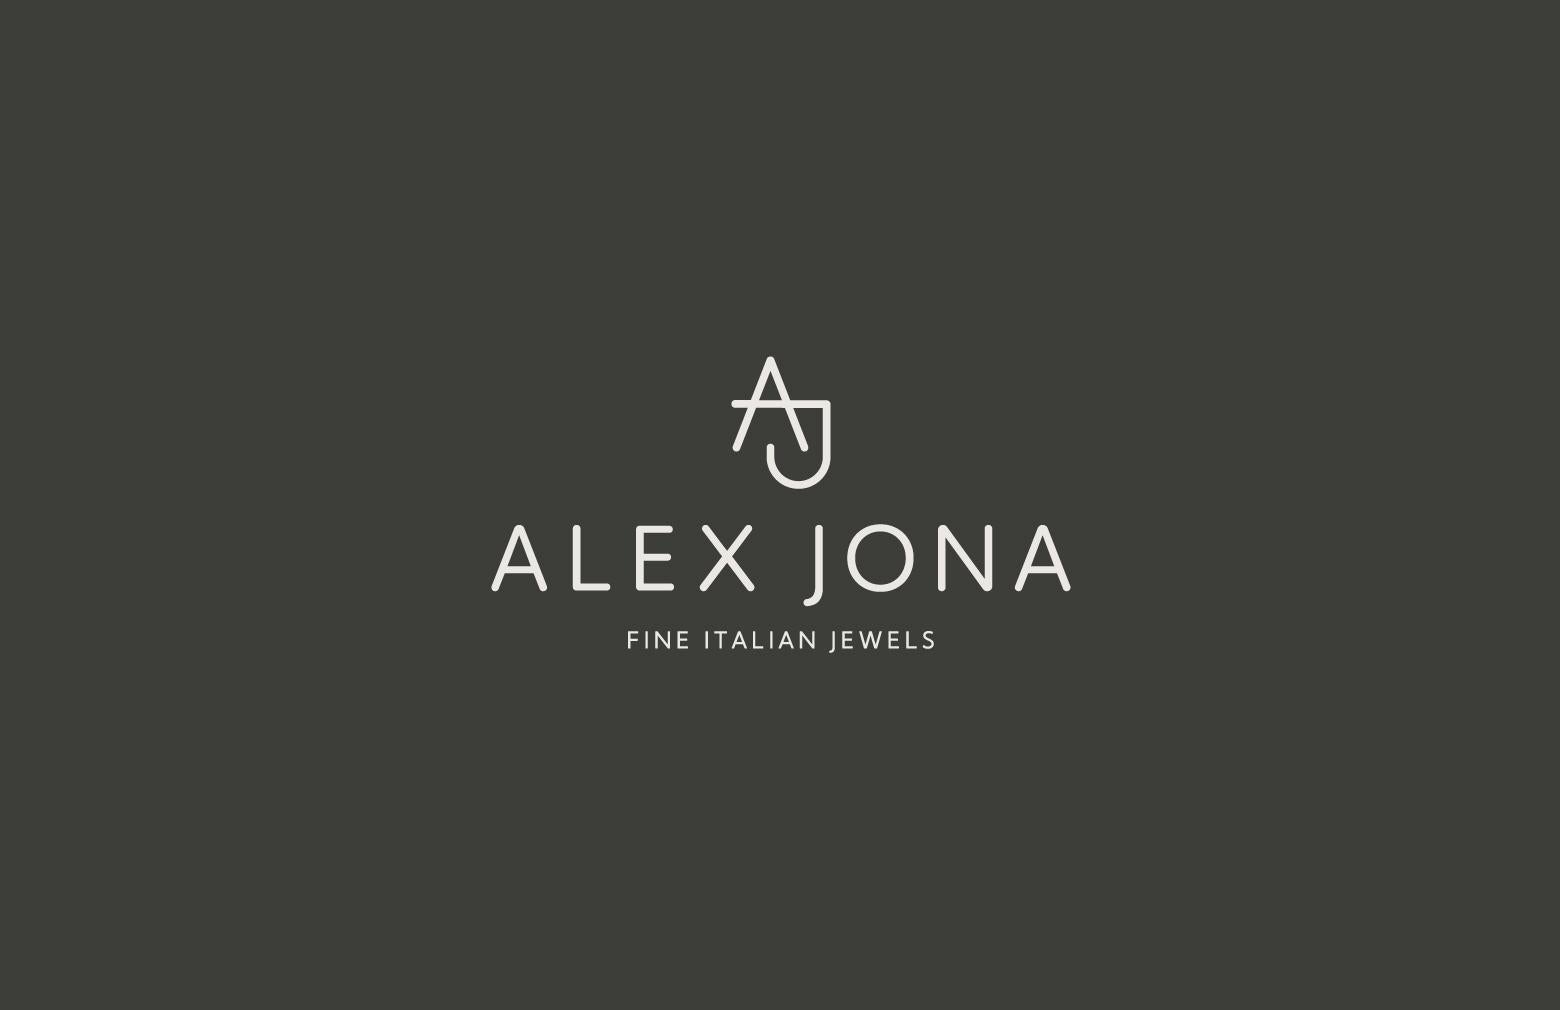 Alex Jona Yellow Gold Happy Long Life Heart Earrings For Sale 5